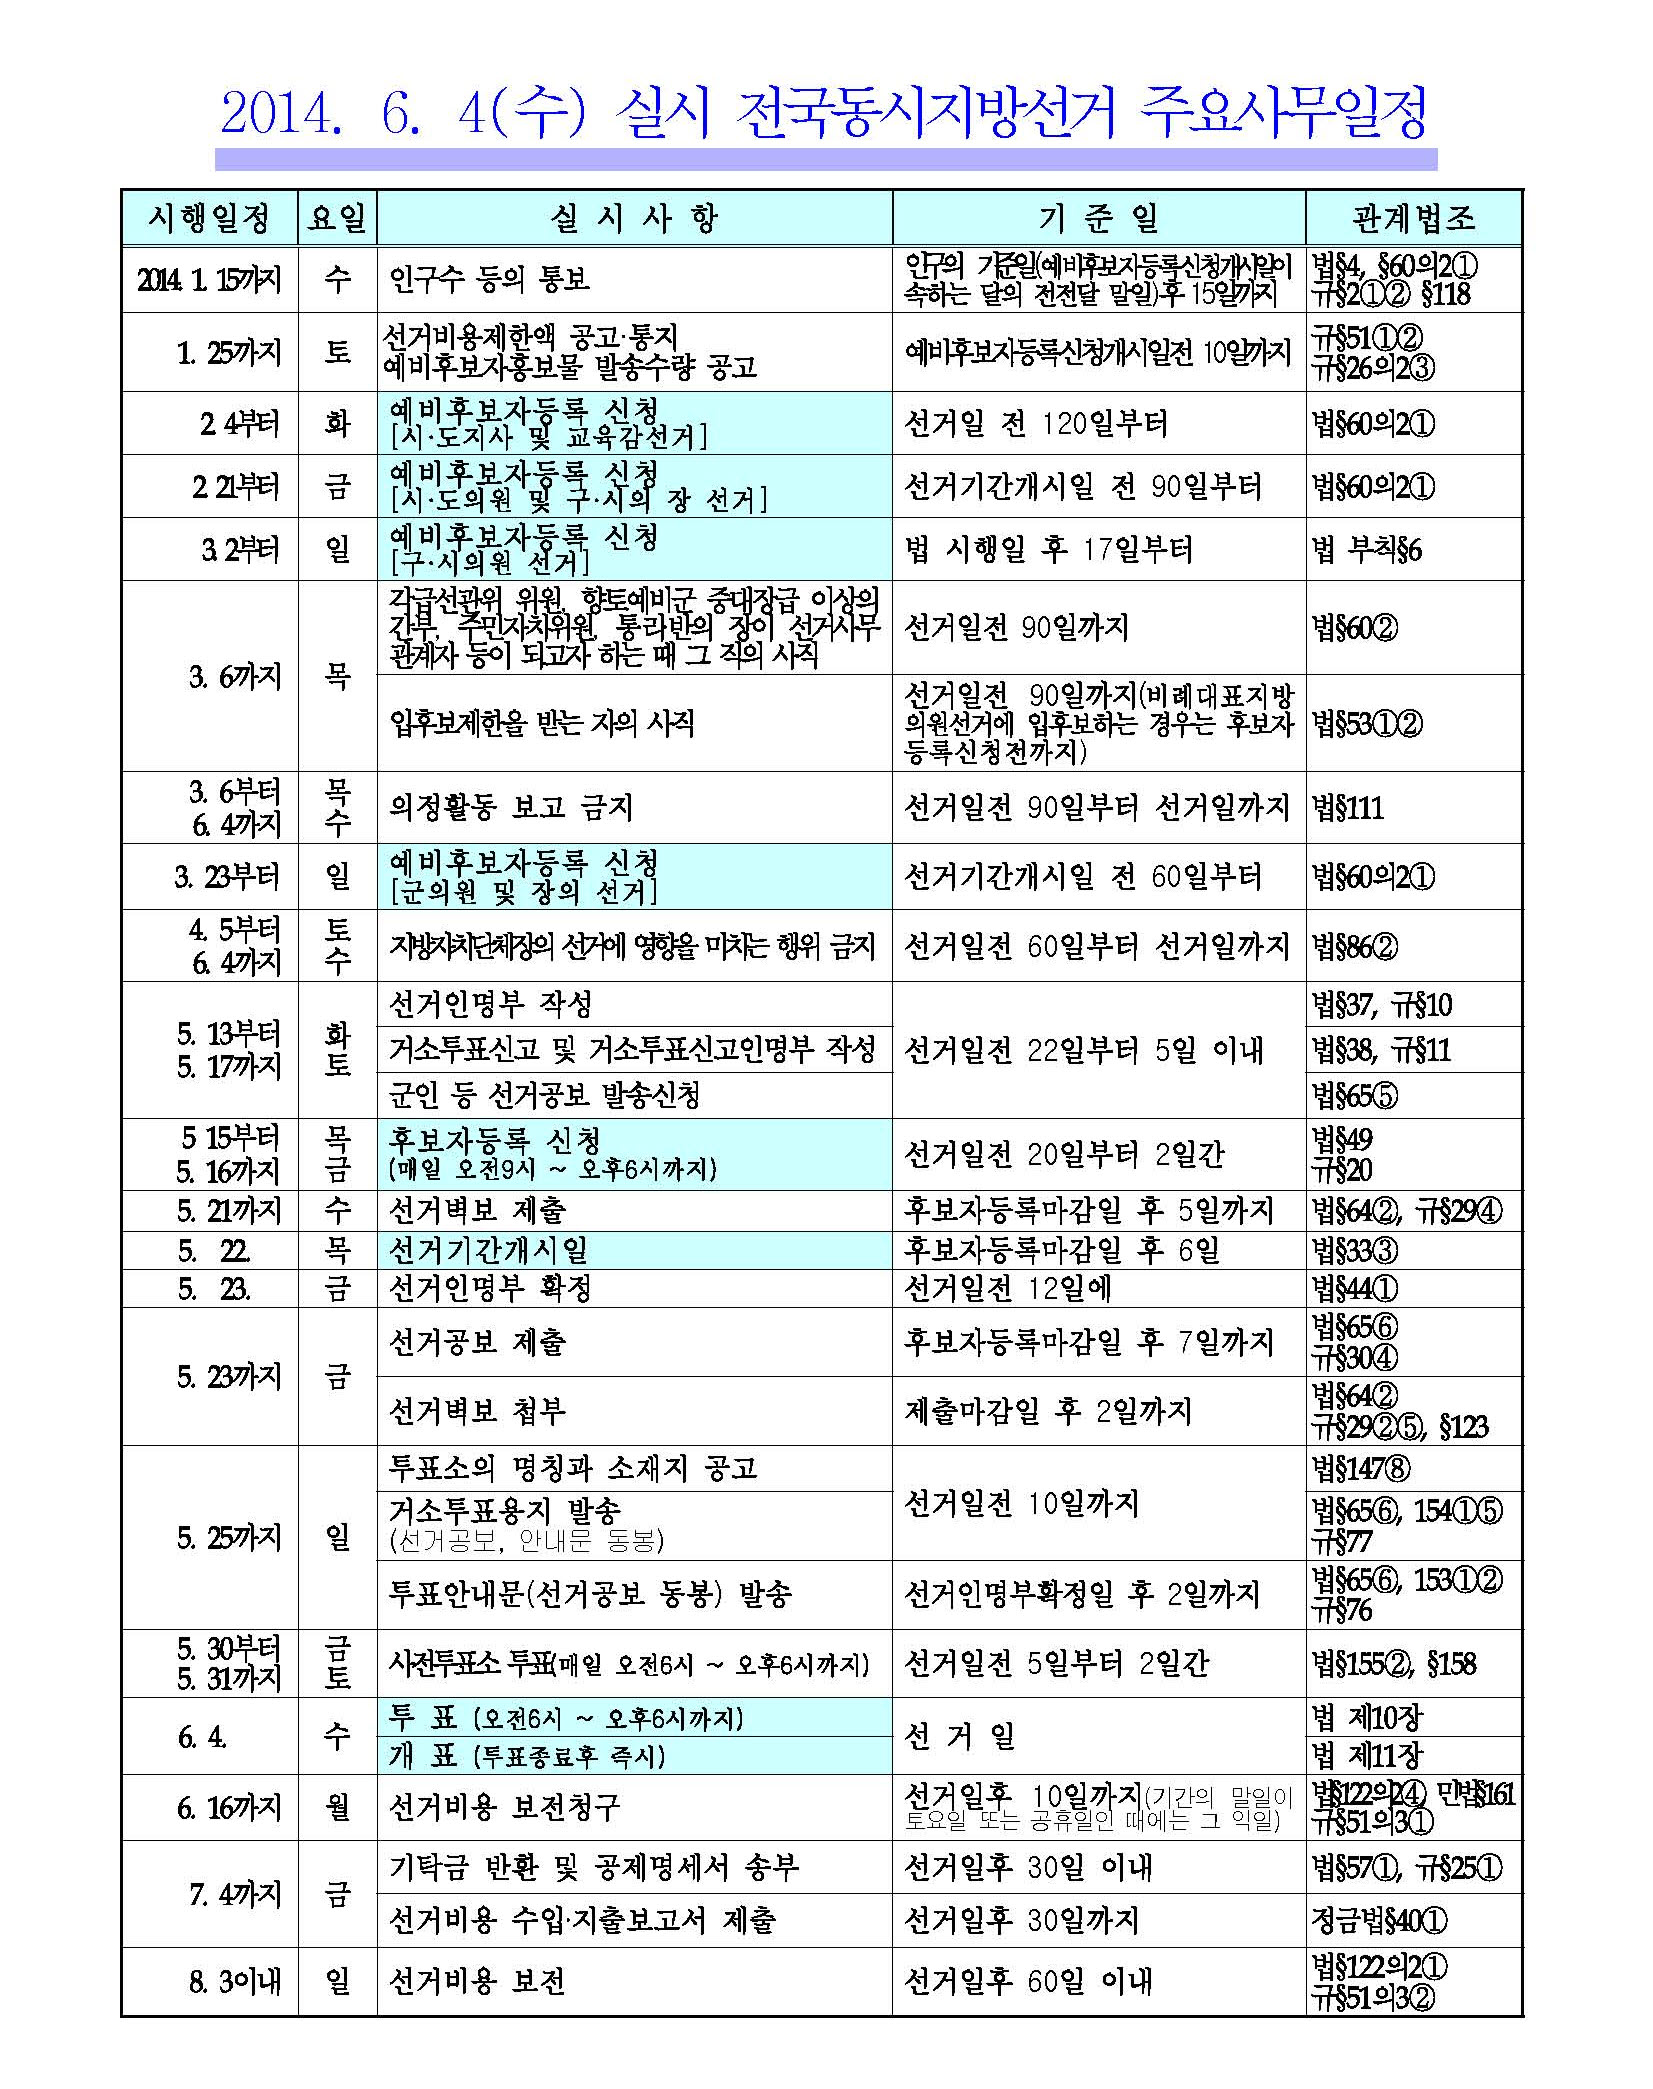 2014.6.4.(수) 제6회 전국동시지방선거 주요사무일정